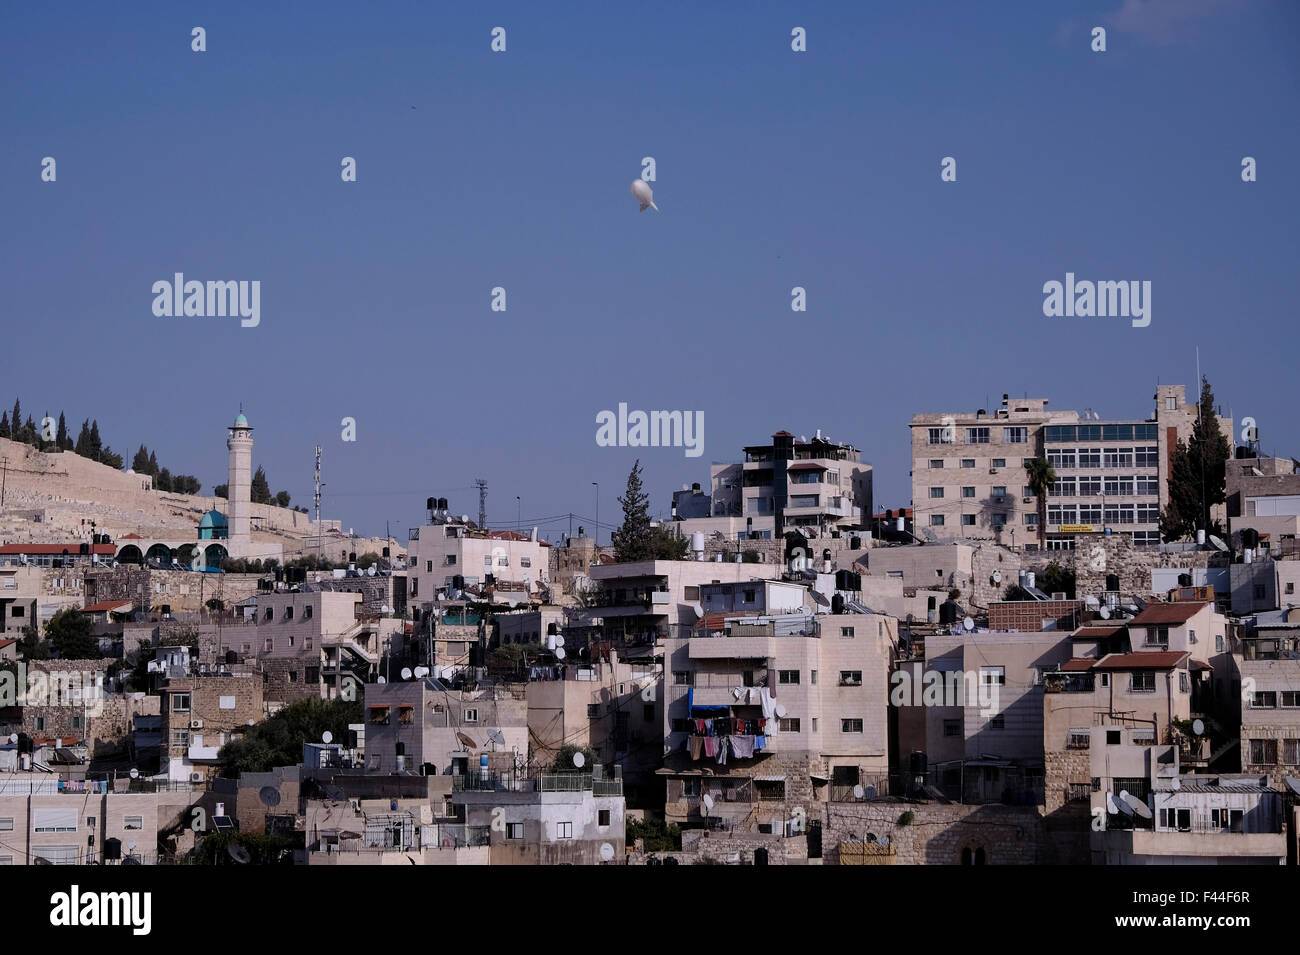 Un israeliano la vigilanza della polizia palloncino è visto volare oltre Ras al-Amud un quartiere palestinese si trova a sud-est della città vecchia di Gerusalemme Est, Israele Foto Stock